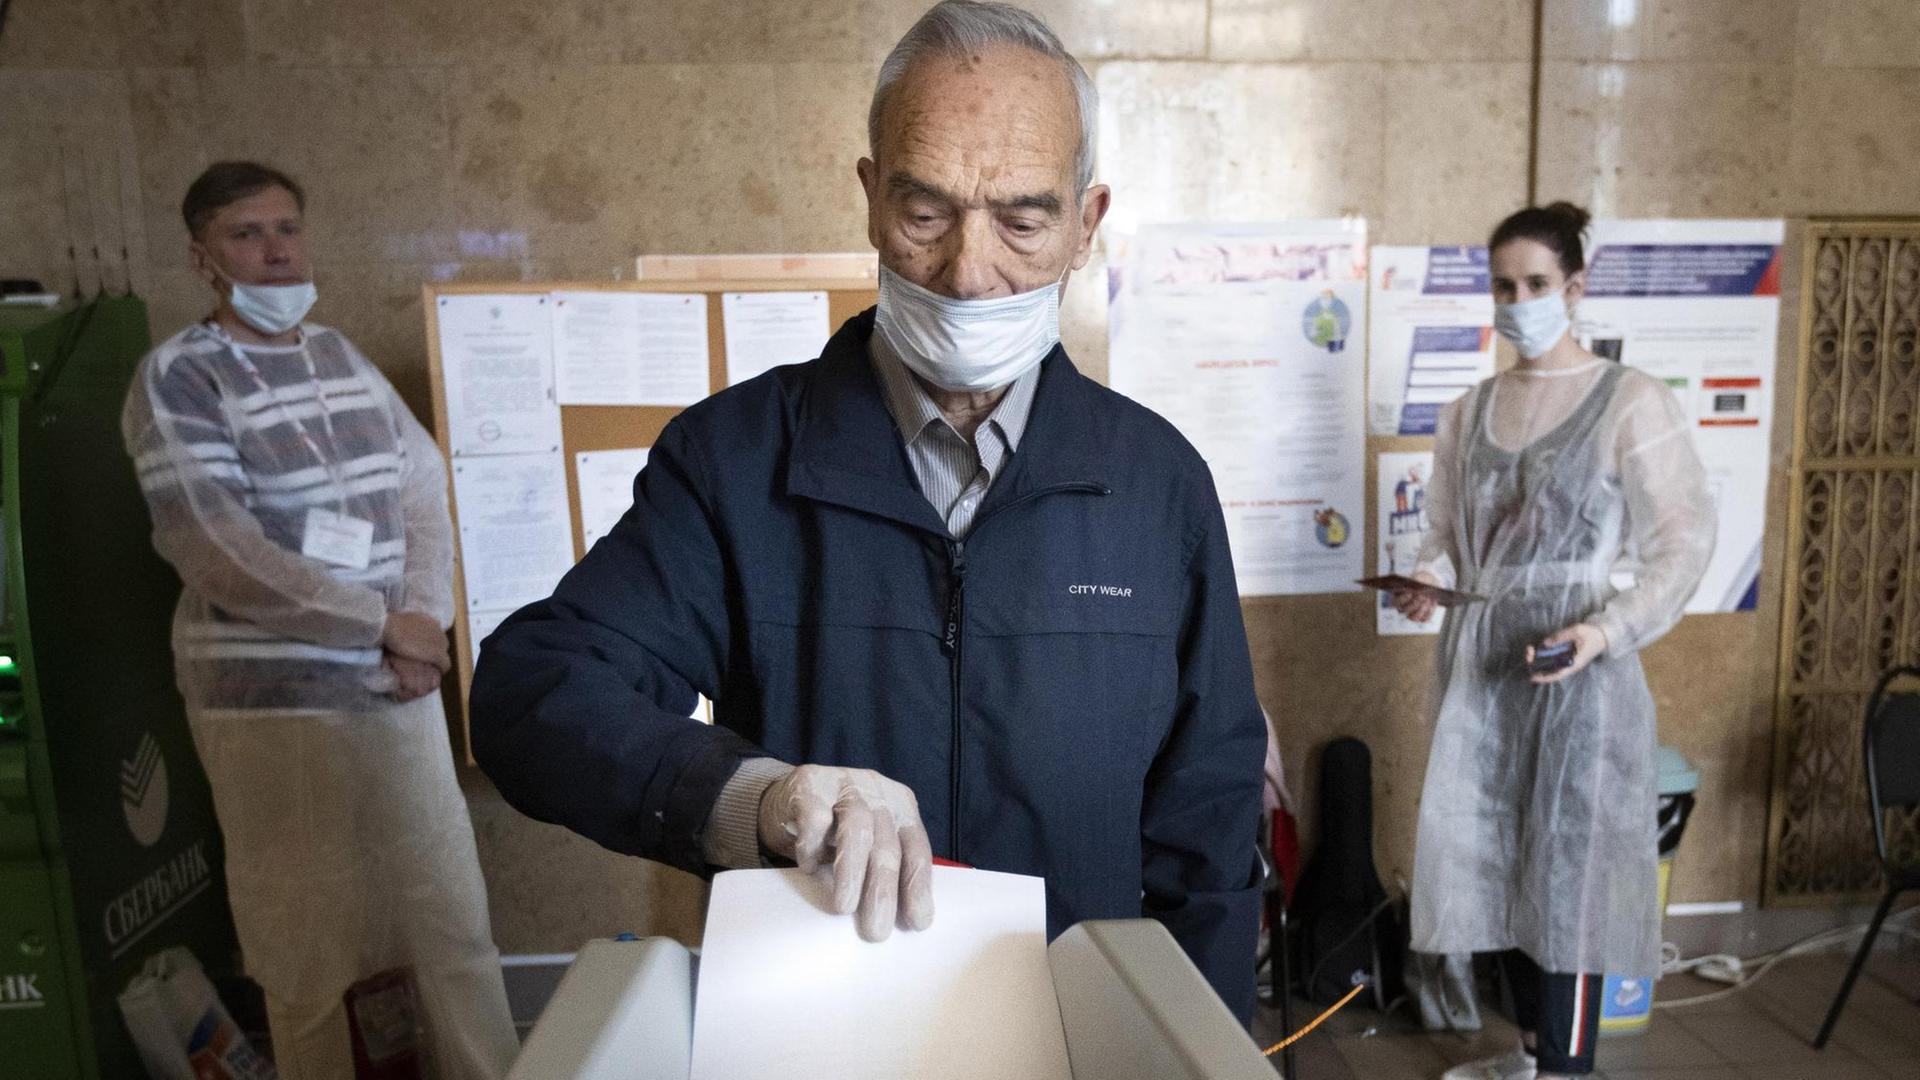 Russland, Moskau: Ein Wähler, der einen Mundschutz und Handschuhe zum Schutz vor dem Coronavirus trägt, wirft seinen Stimmzettel in einem Wahllokal in eine Wahlurne.